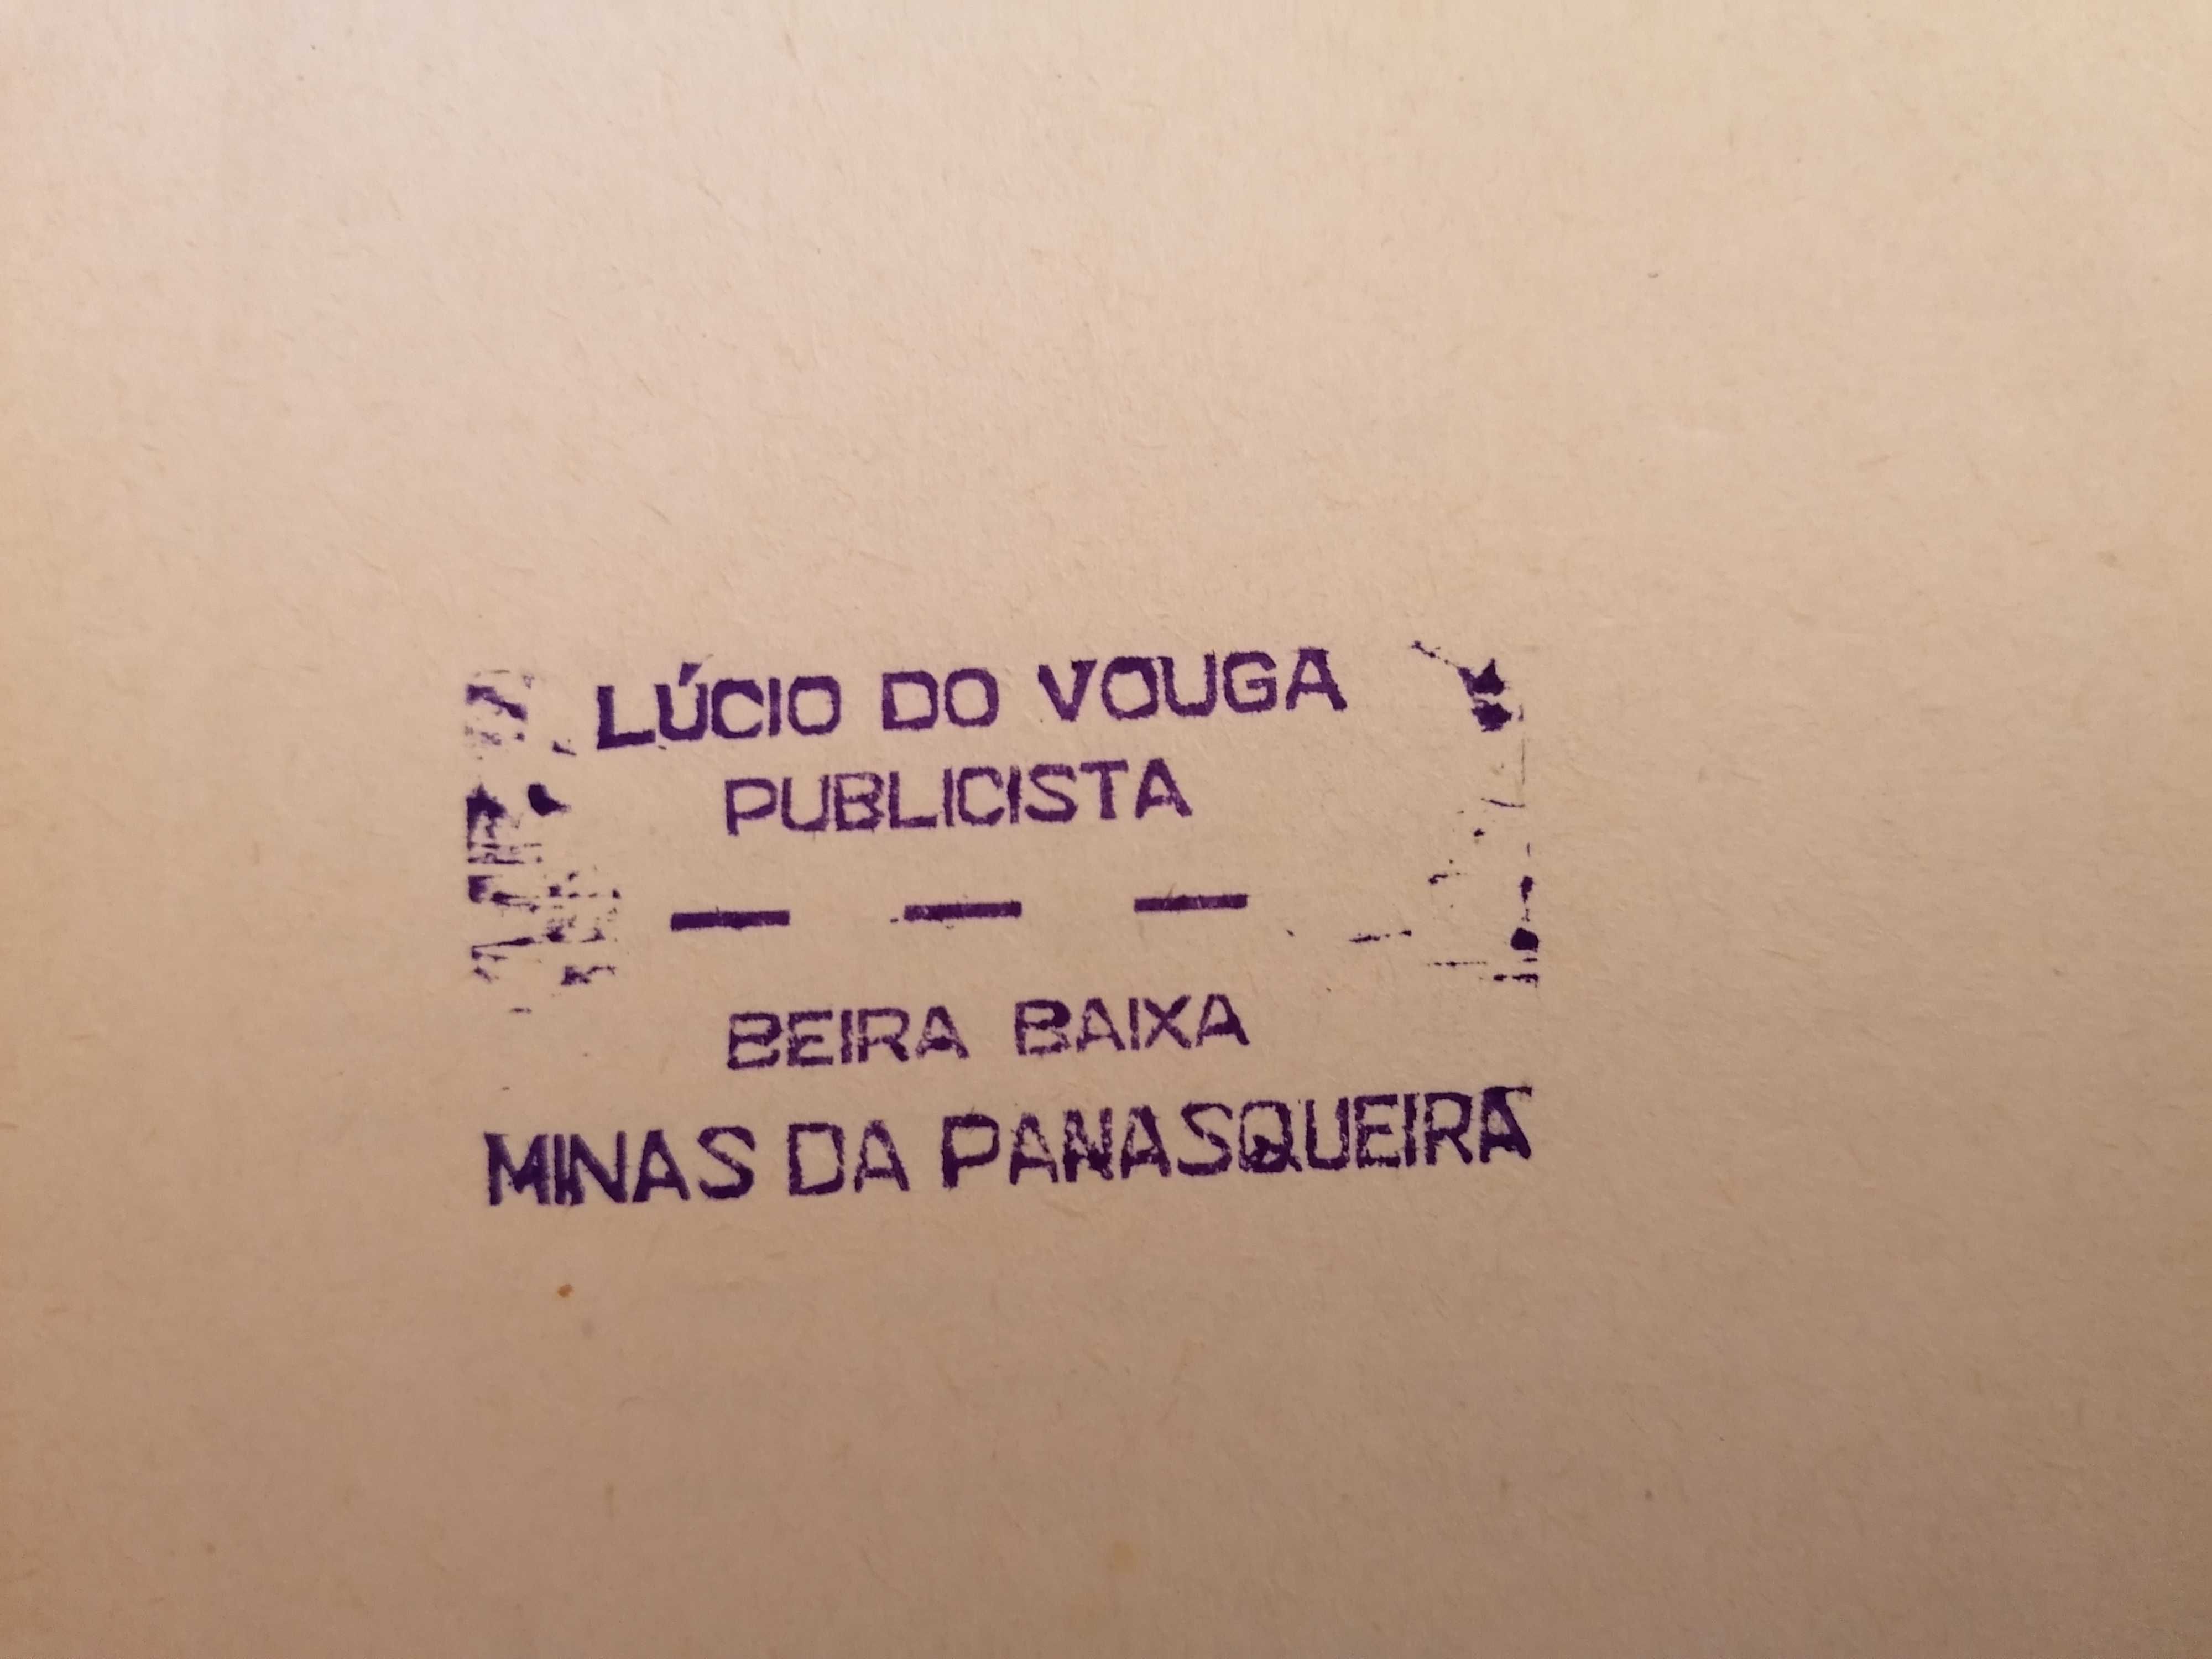 Mar bravo, Lúcio do Vouga, 1ª edição 1957, dedicatória do autor